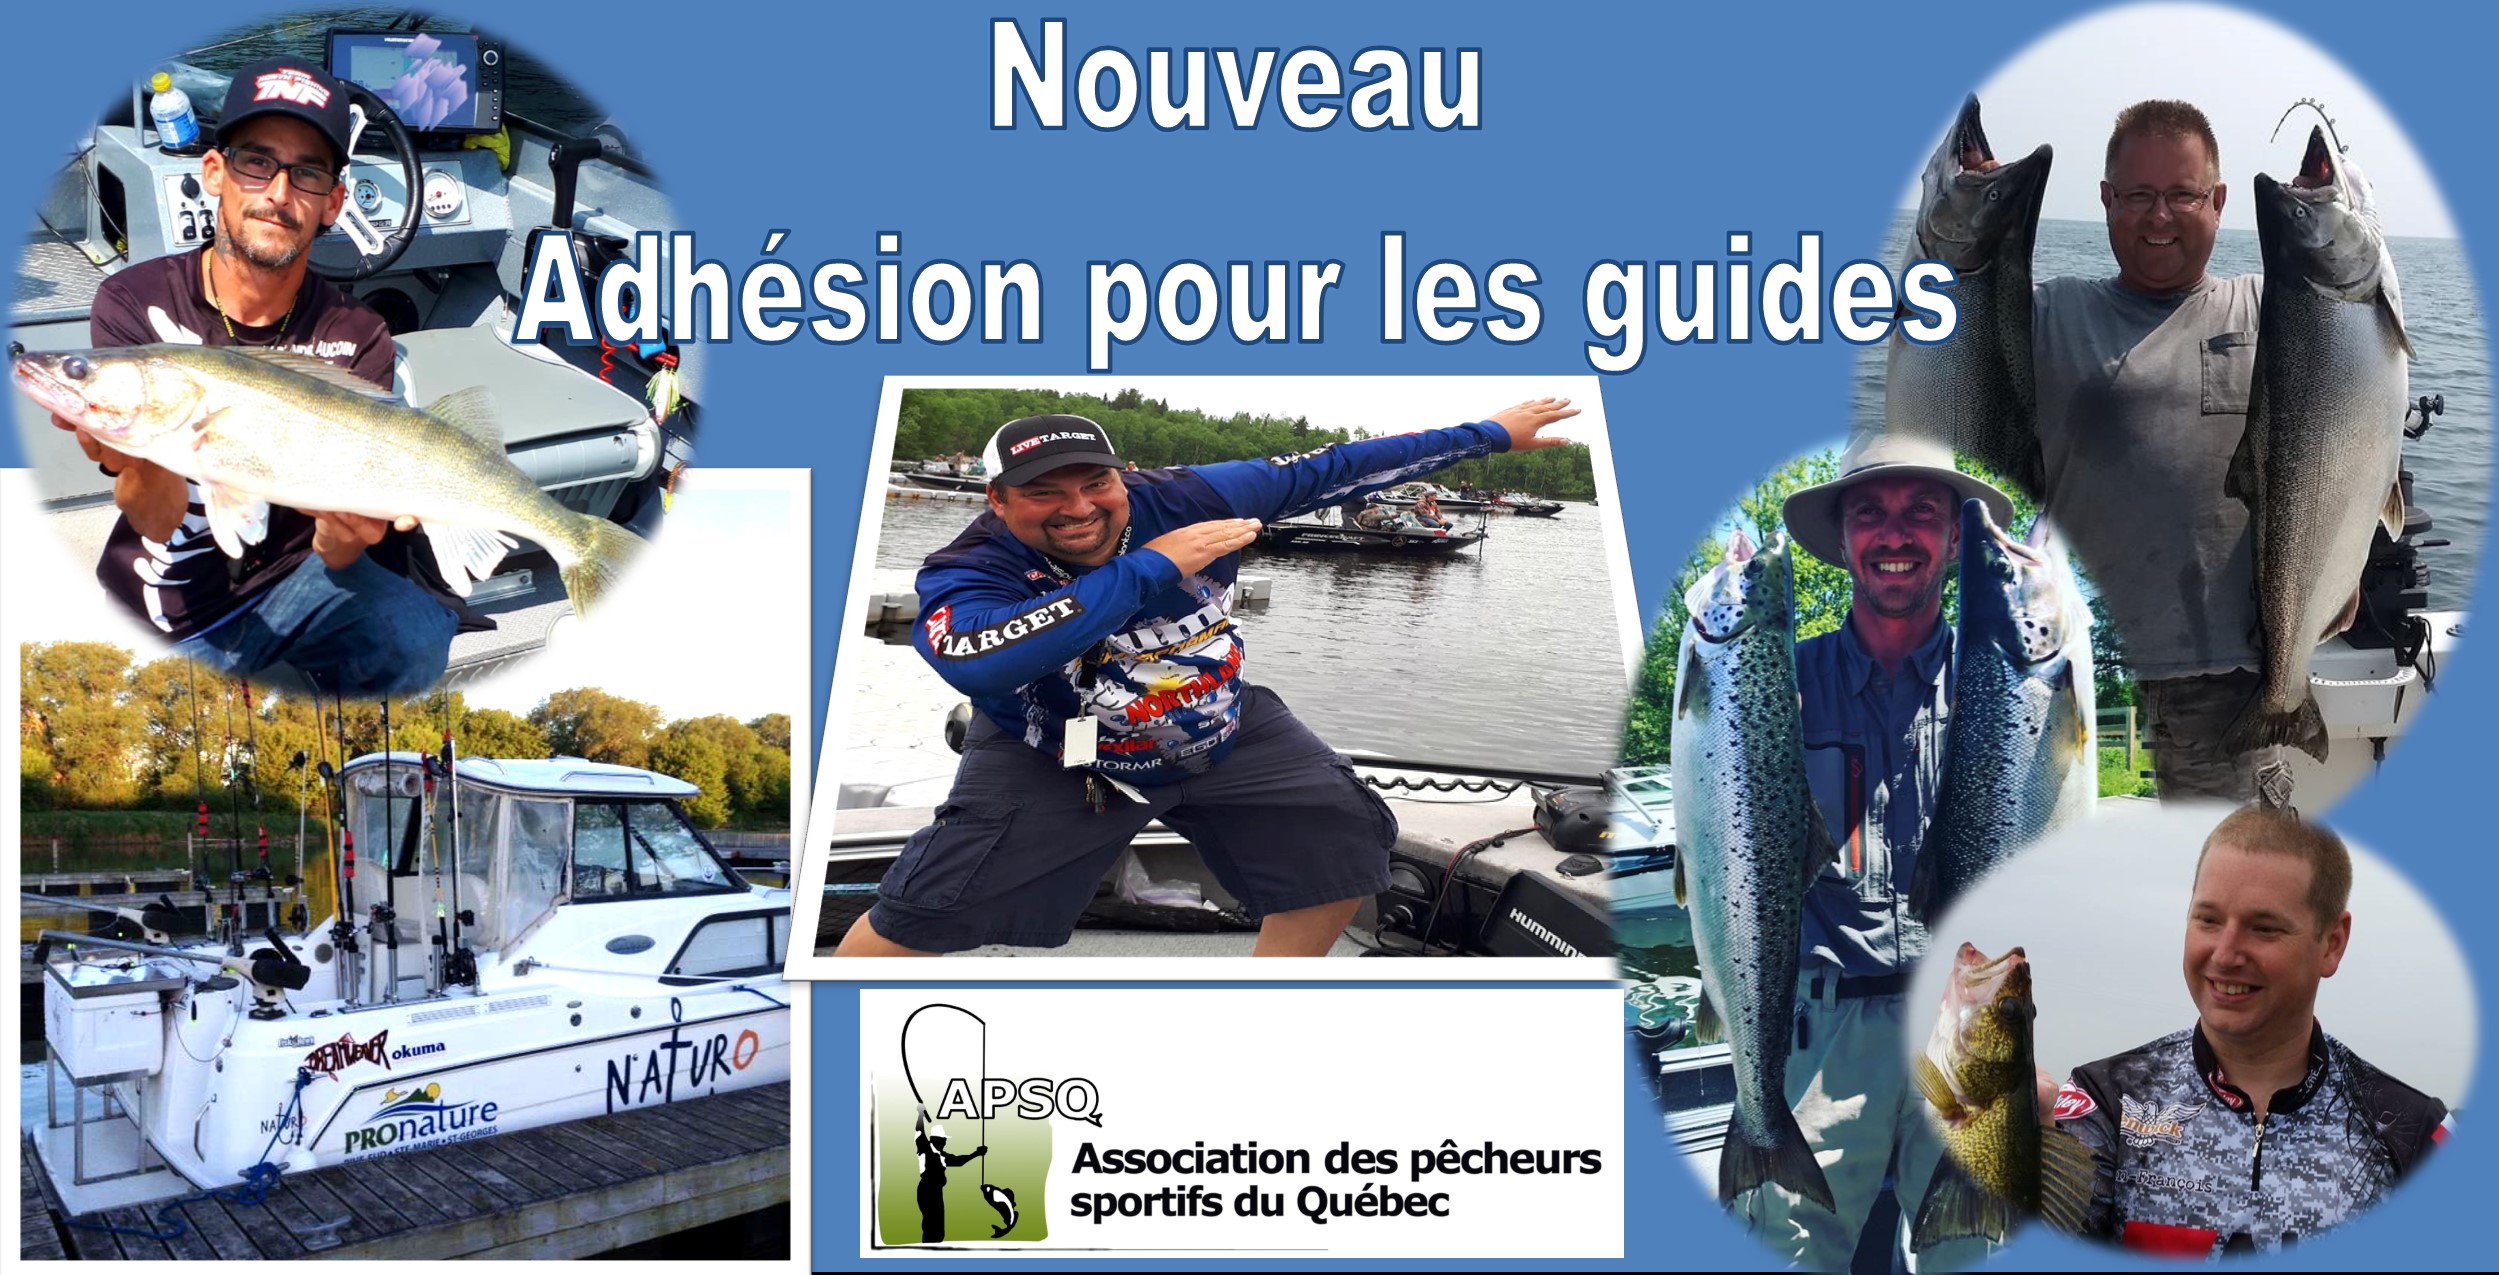 Nouveau en 2019 - Adhésion pour les guides de pêche